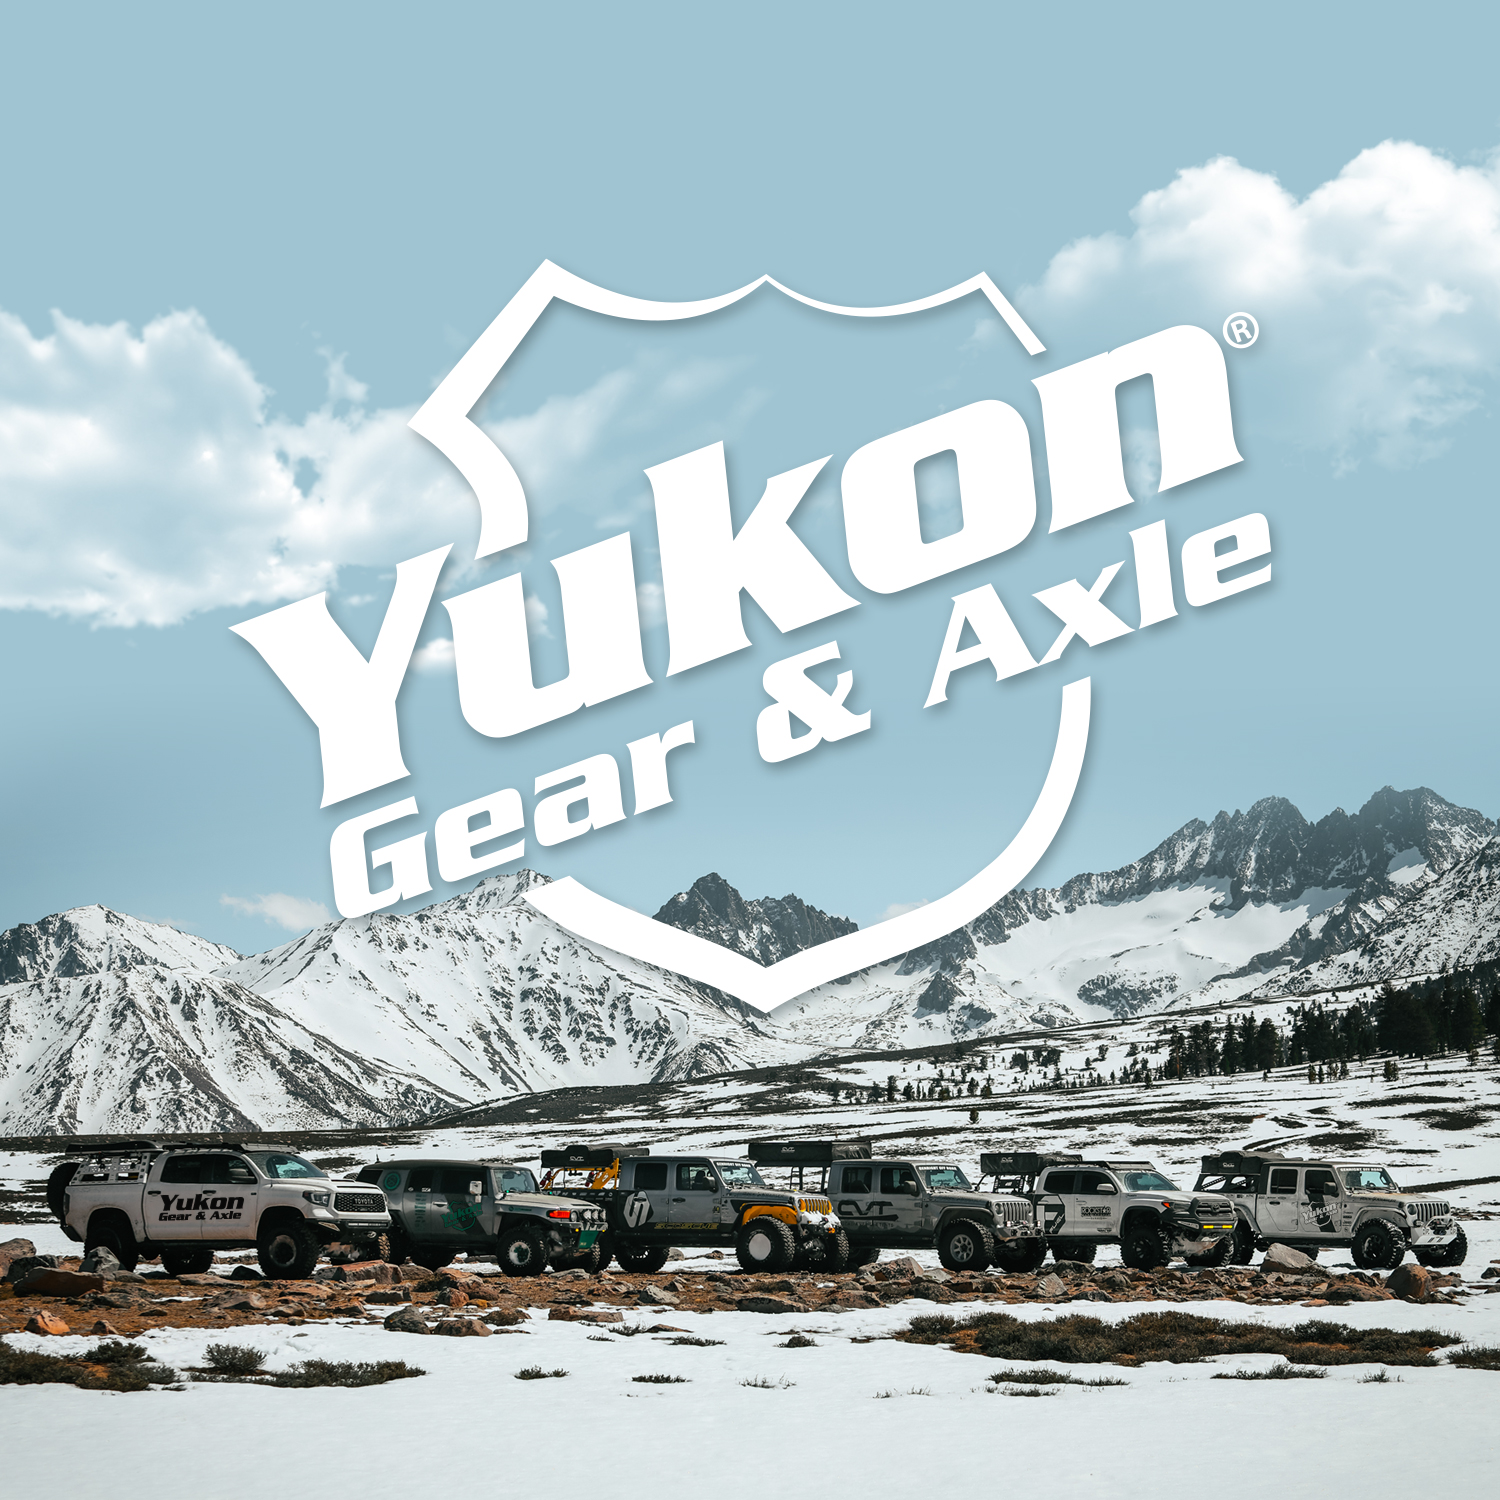 Yukon standard open spider gear kit for 9.25" Chrysler with 31 spline axles 